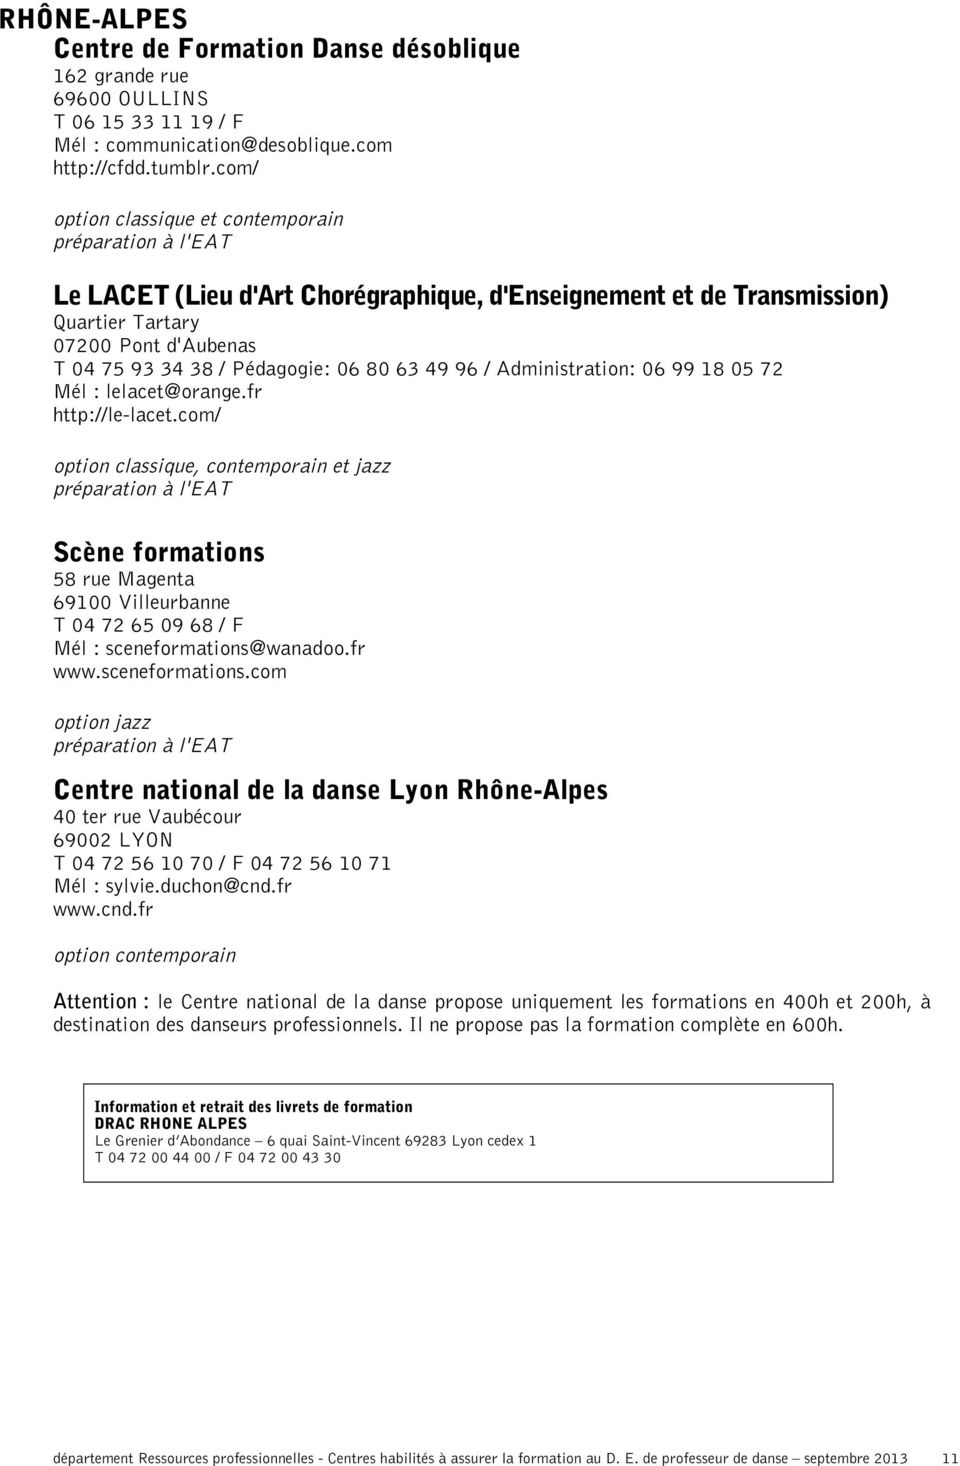 06 80 63 49 96 / Administration: 06 99 18 05 72 Mél : lelacet@orange.fr http://le-lacet.